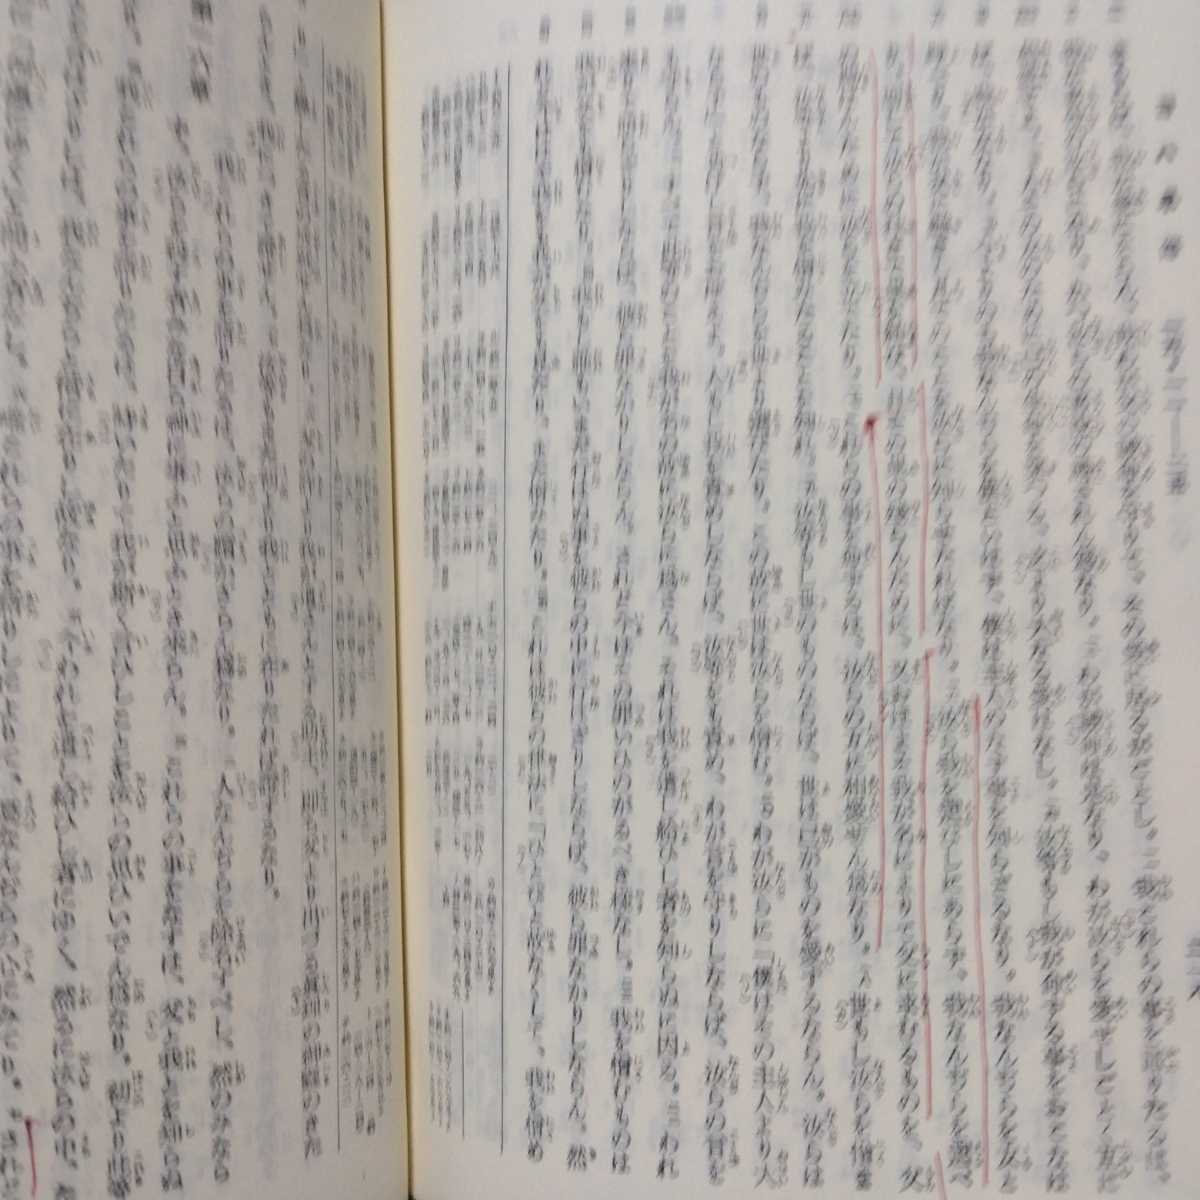 舊新約聖書 引照附 日本聖書協会 JLO63 文語訳聖書 旧訳 古書 免税品購入